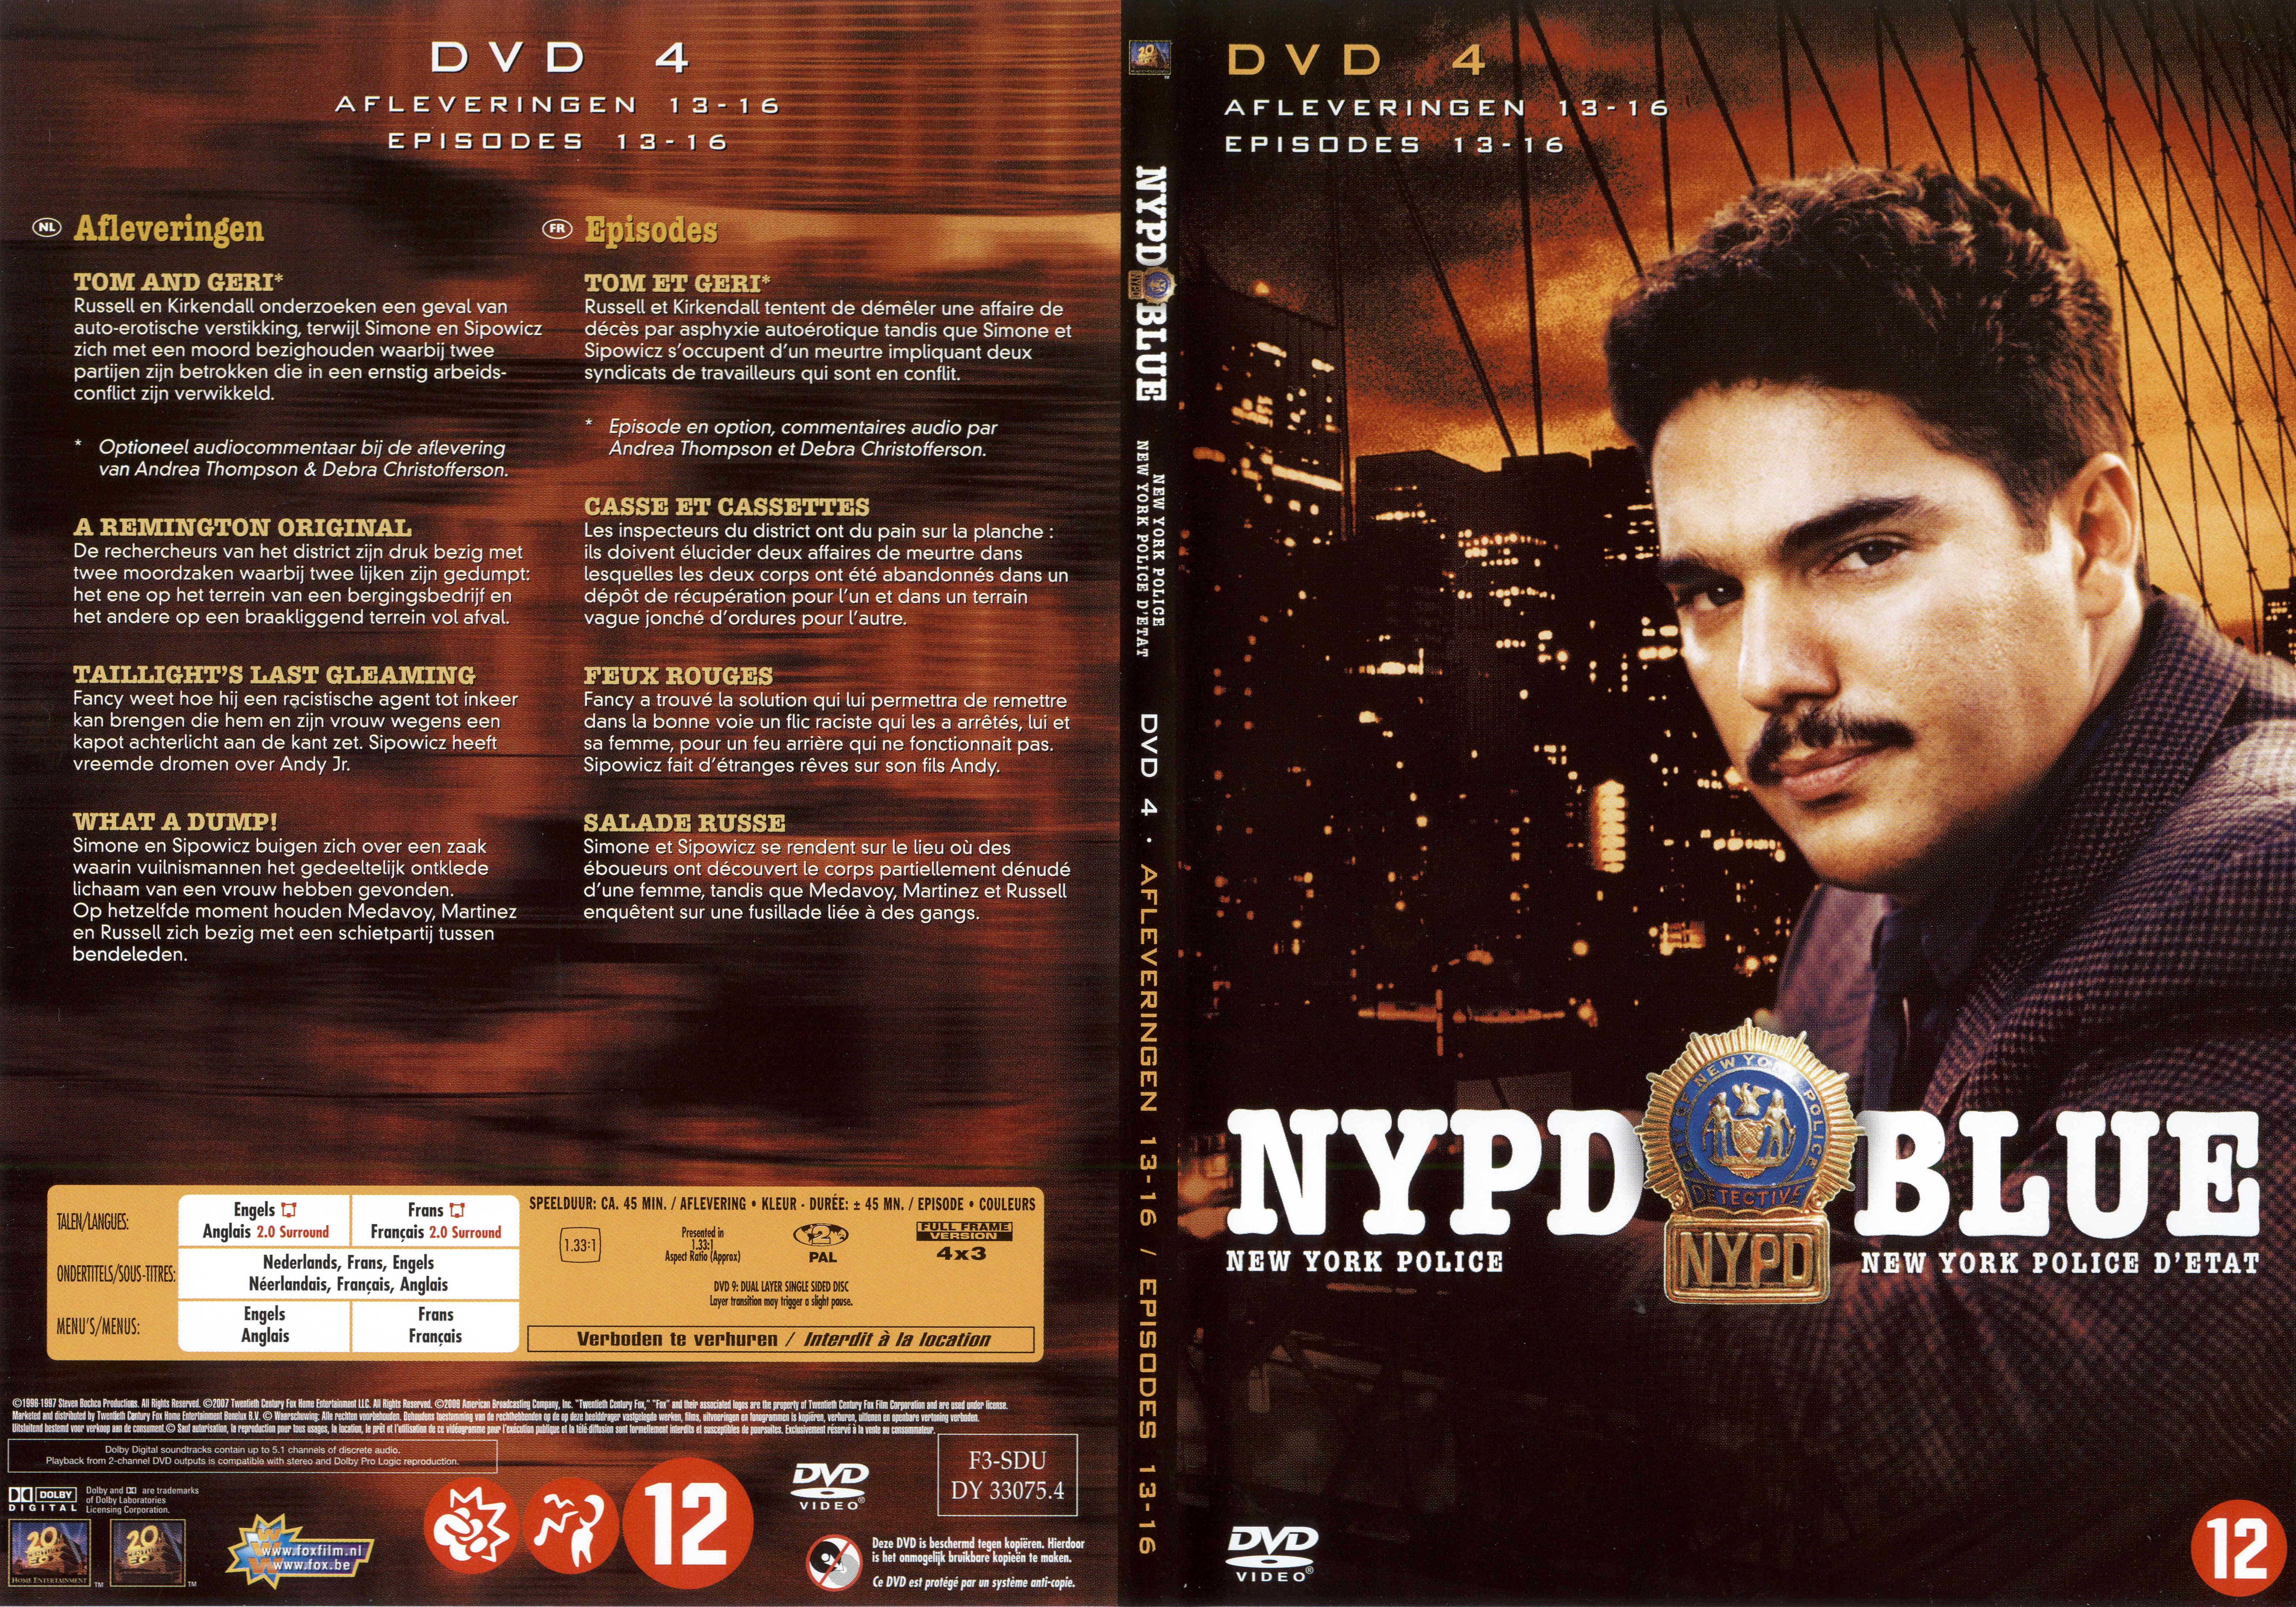 Jaquette DVD NYPD Blue saison 04 dvd 04